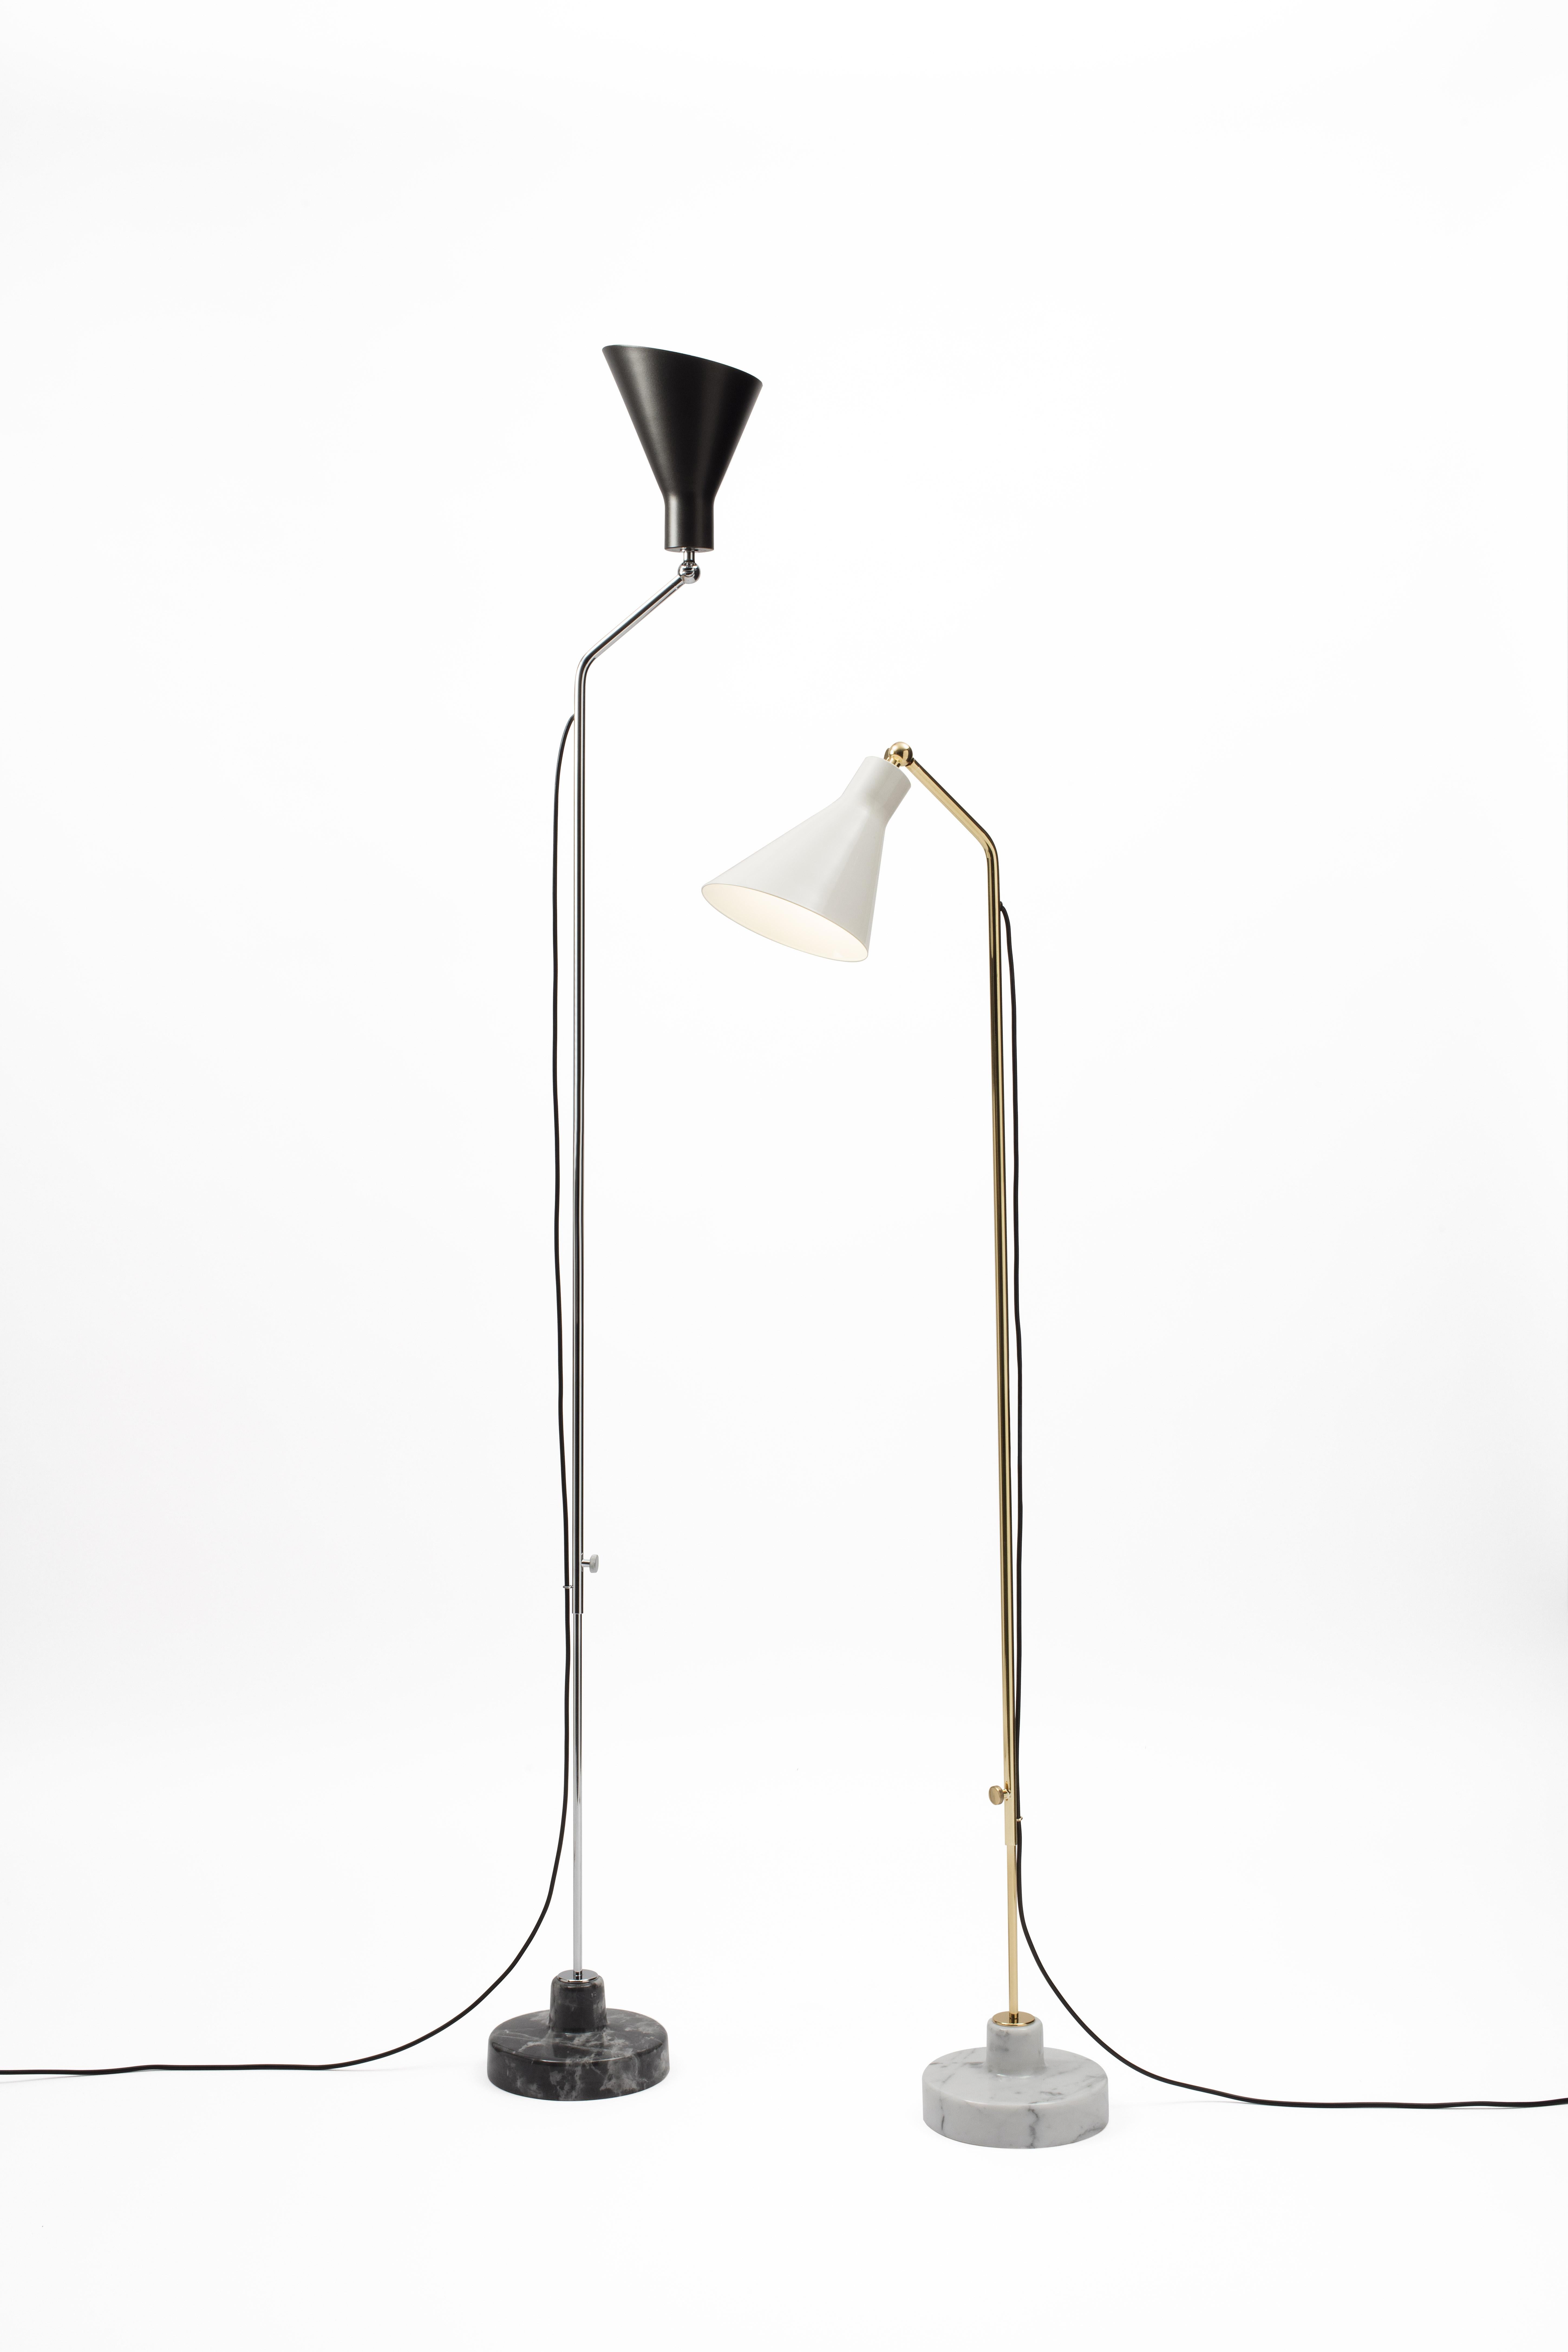 Ignazio Gardella Alzabile Floor Lamp in Brass and Black Marble for Tato Italia For Sale 4